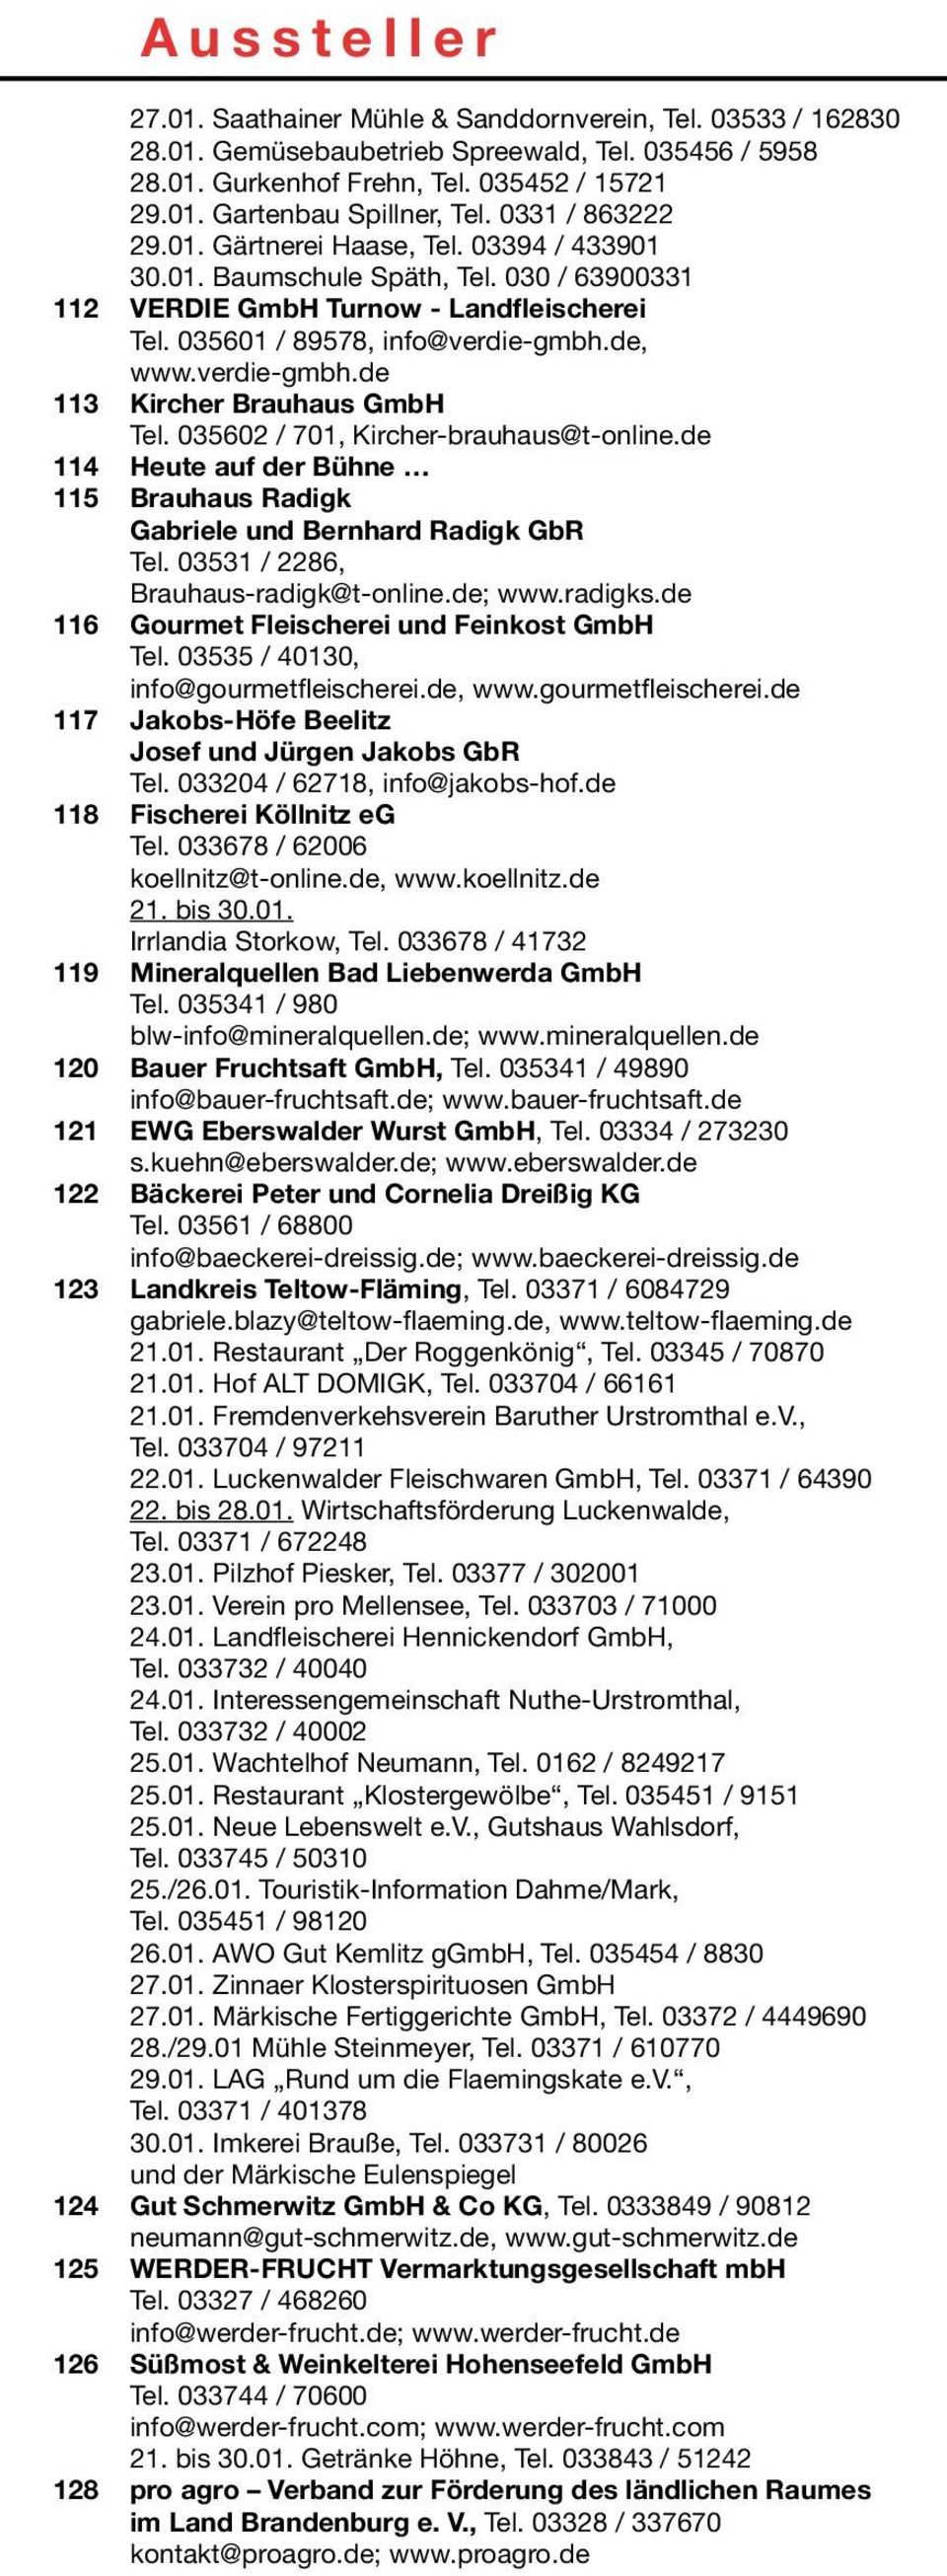 verdie-gmbh.de 113 Kircher Brauhaus GmbH Tel. 035602 / 701, Kircher-brauhaus@t-online.de 114 Heute auf der Bühne 115 Brauhaus Radigk Gabriele und Bernhard Radigk GbR Tel.